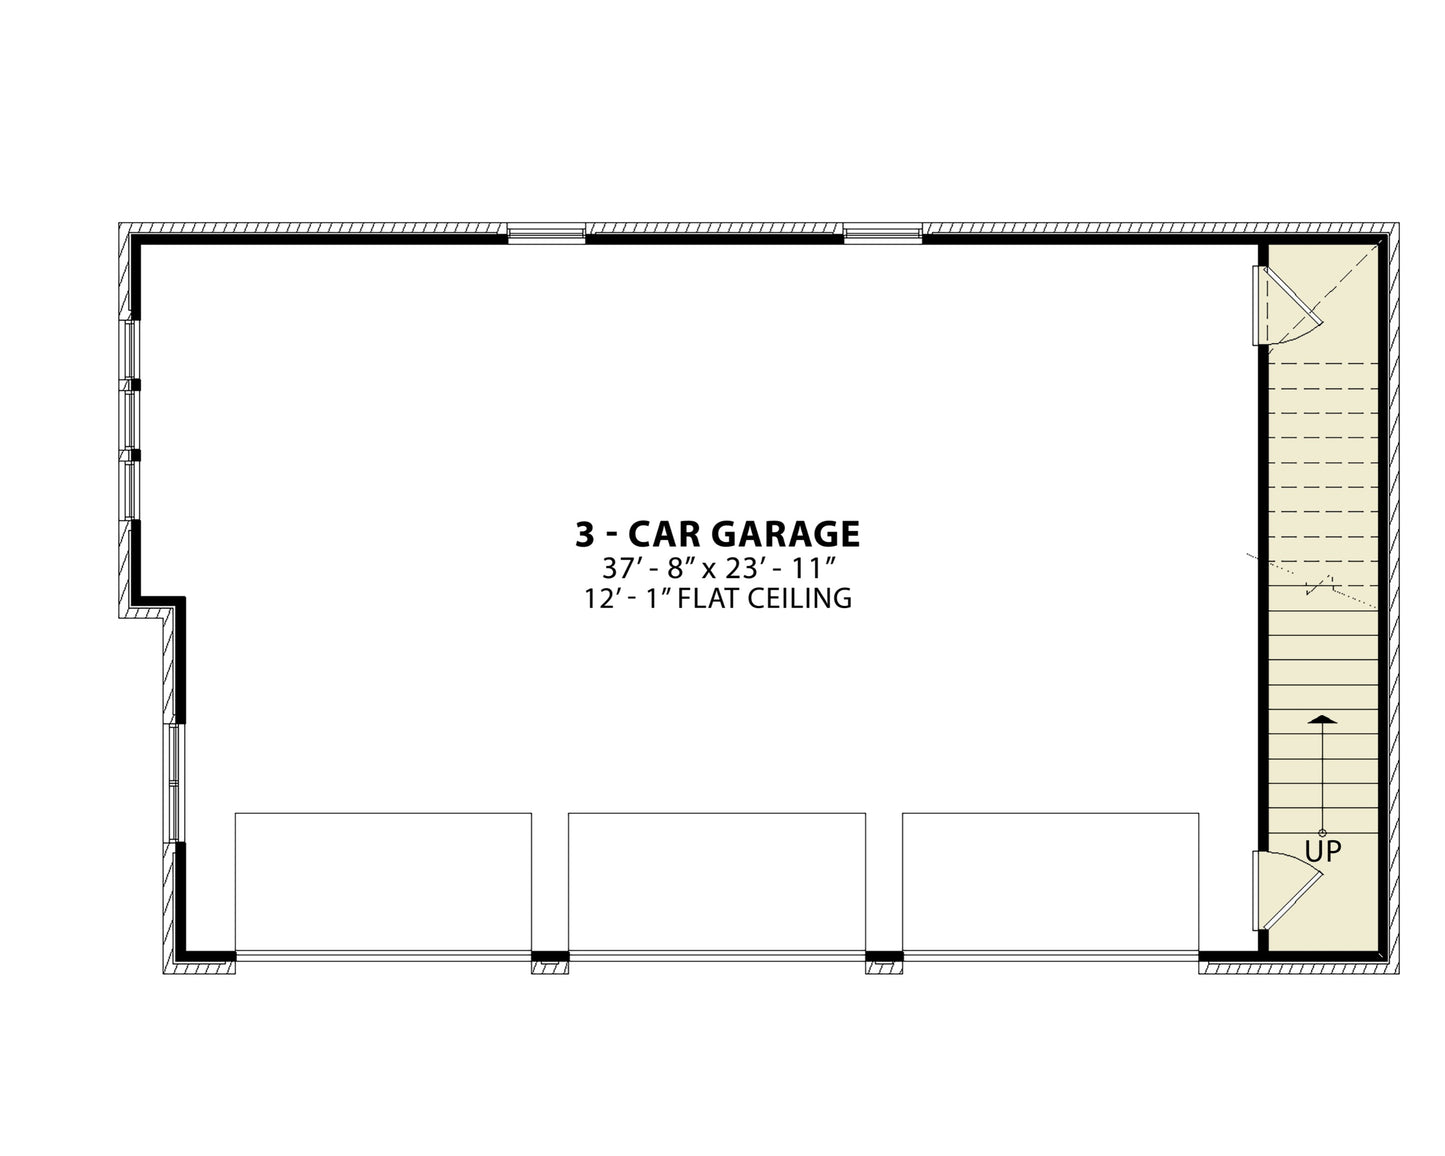 GARAGE PLAN - 22076 Floor_Plan